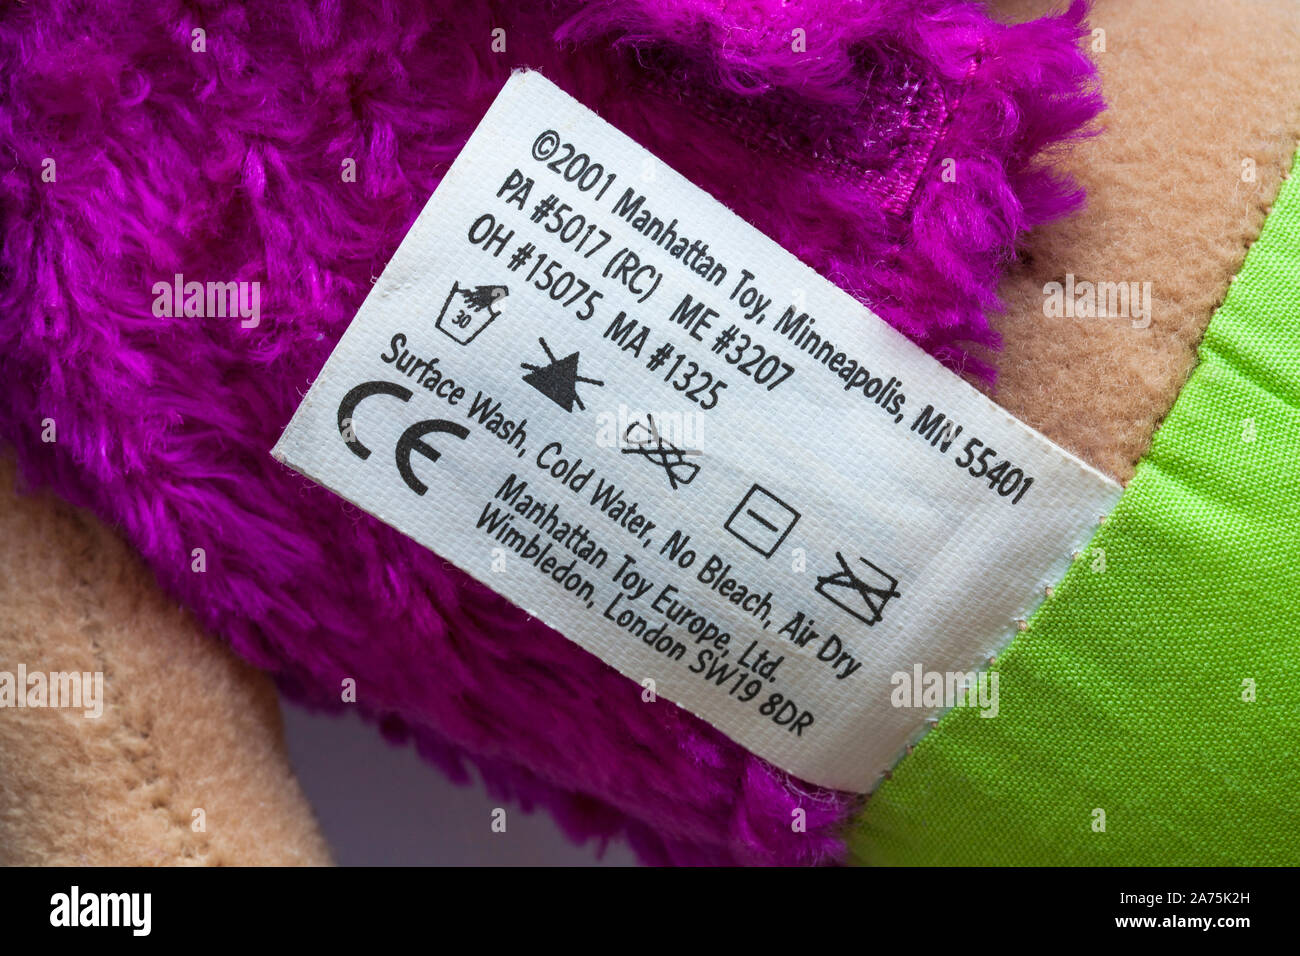 Oberflächenwäsche, kaltes Wasser, keine Bleichmittel, lufttrocken - Pflegehinweise Etikett auf Kinderspielzeug mit CE-Zeichen Stockfoto